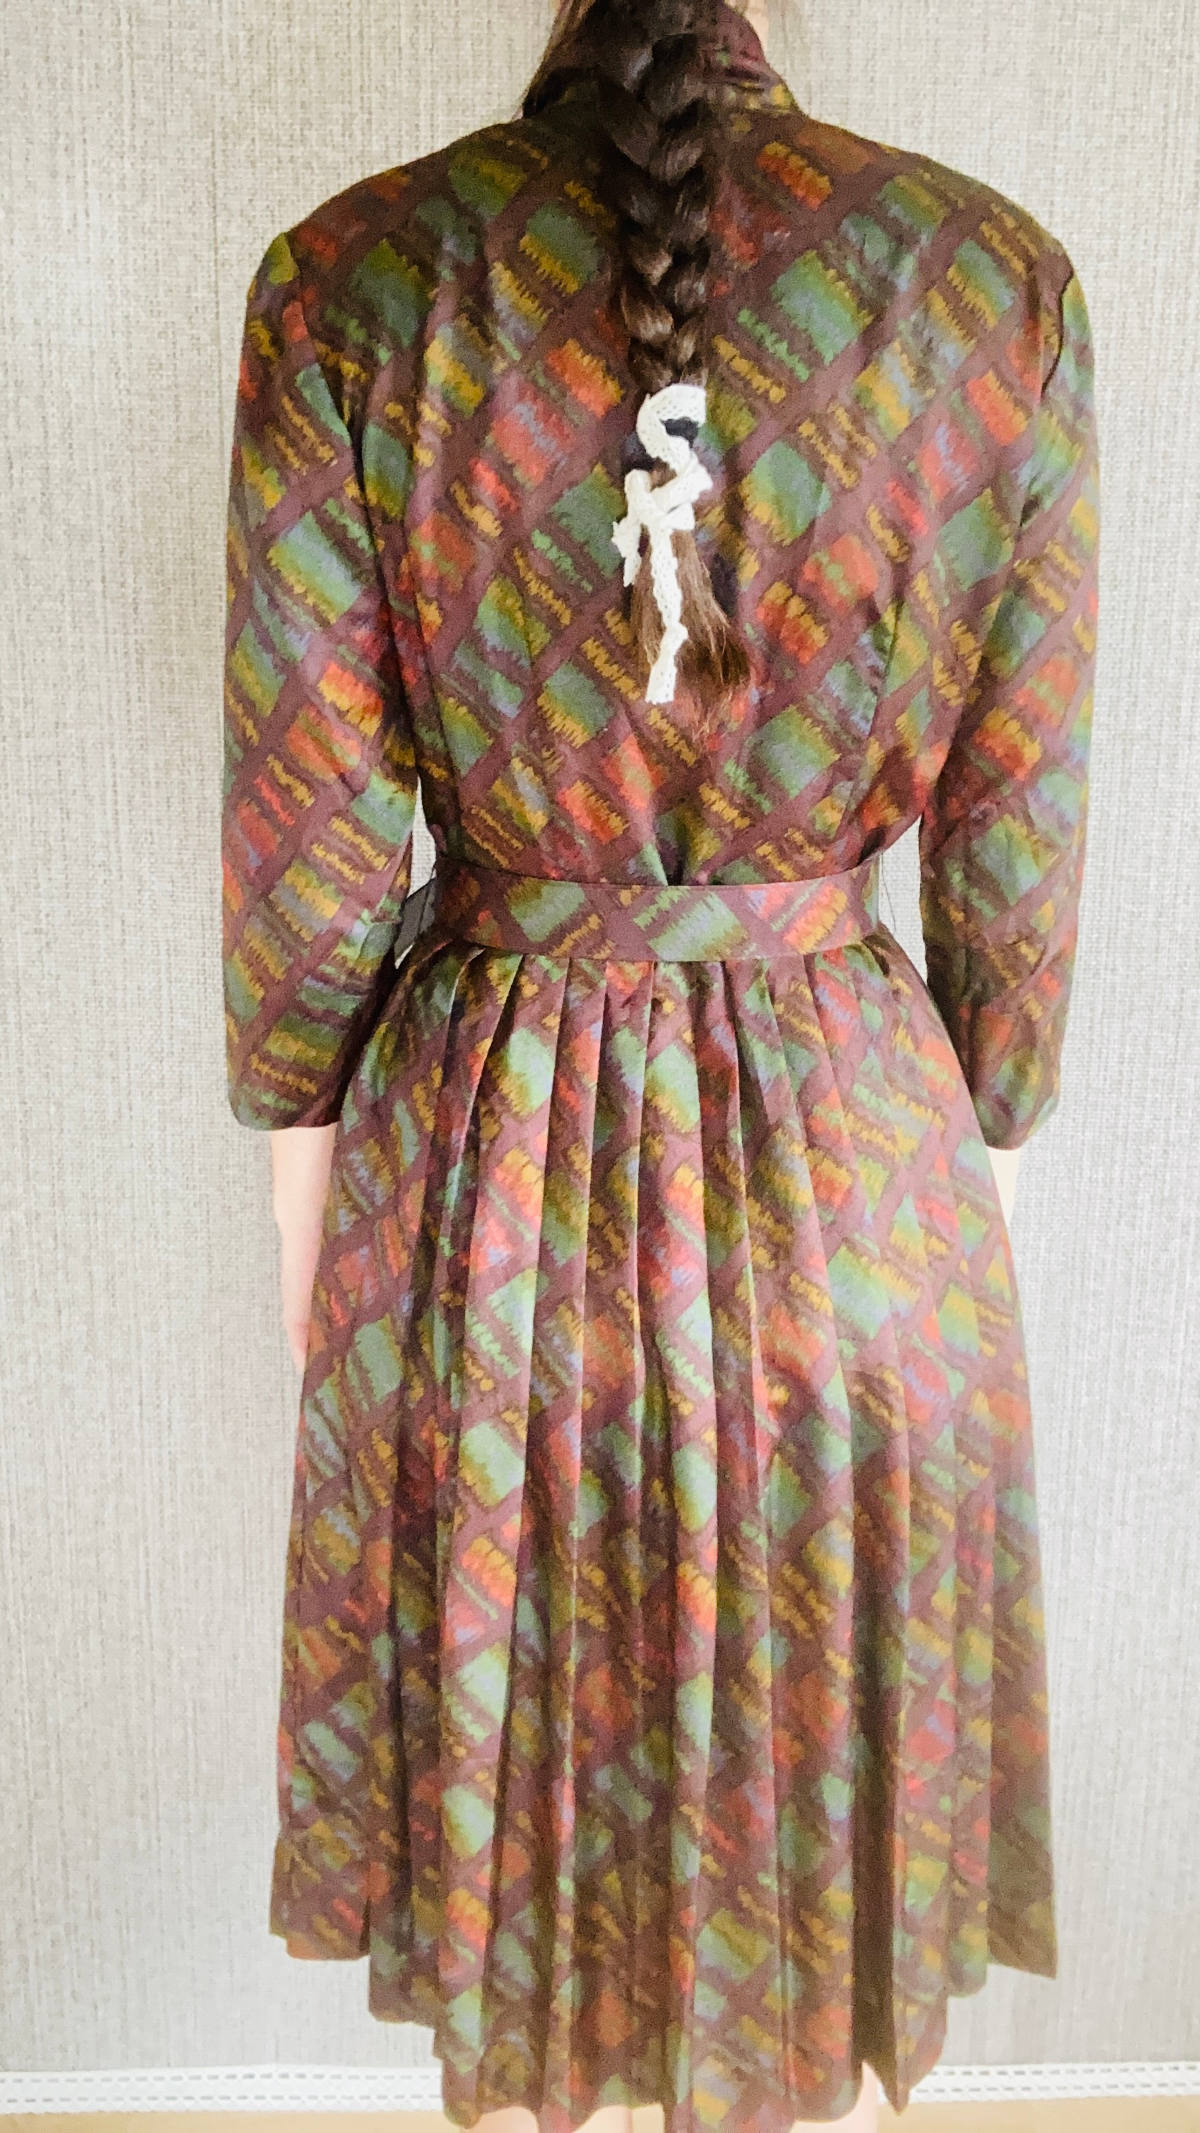 Faltenrock Kleid hochgeschlossen in braun Vintage retro langarm Kleid mein herzblut Niederbayern.